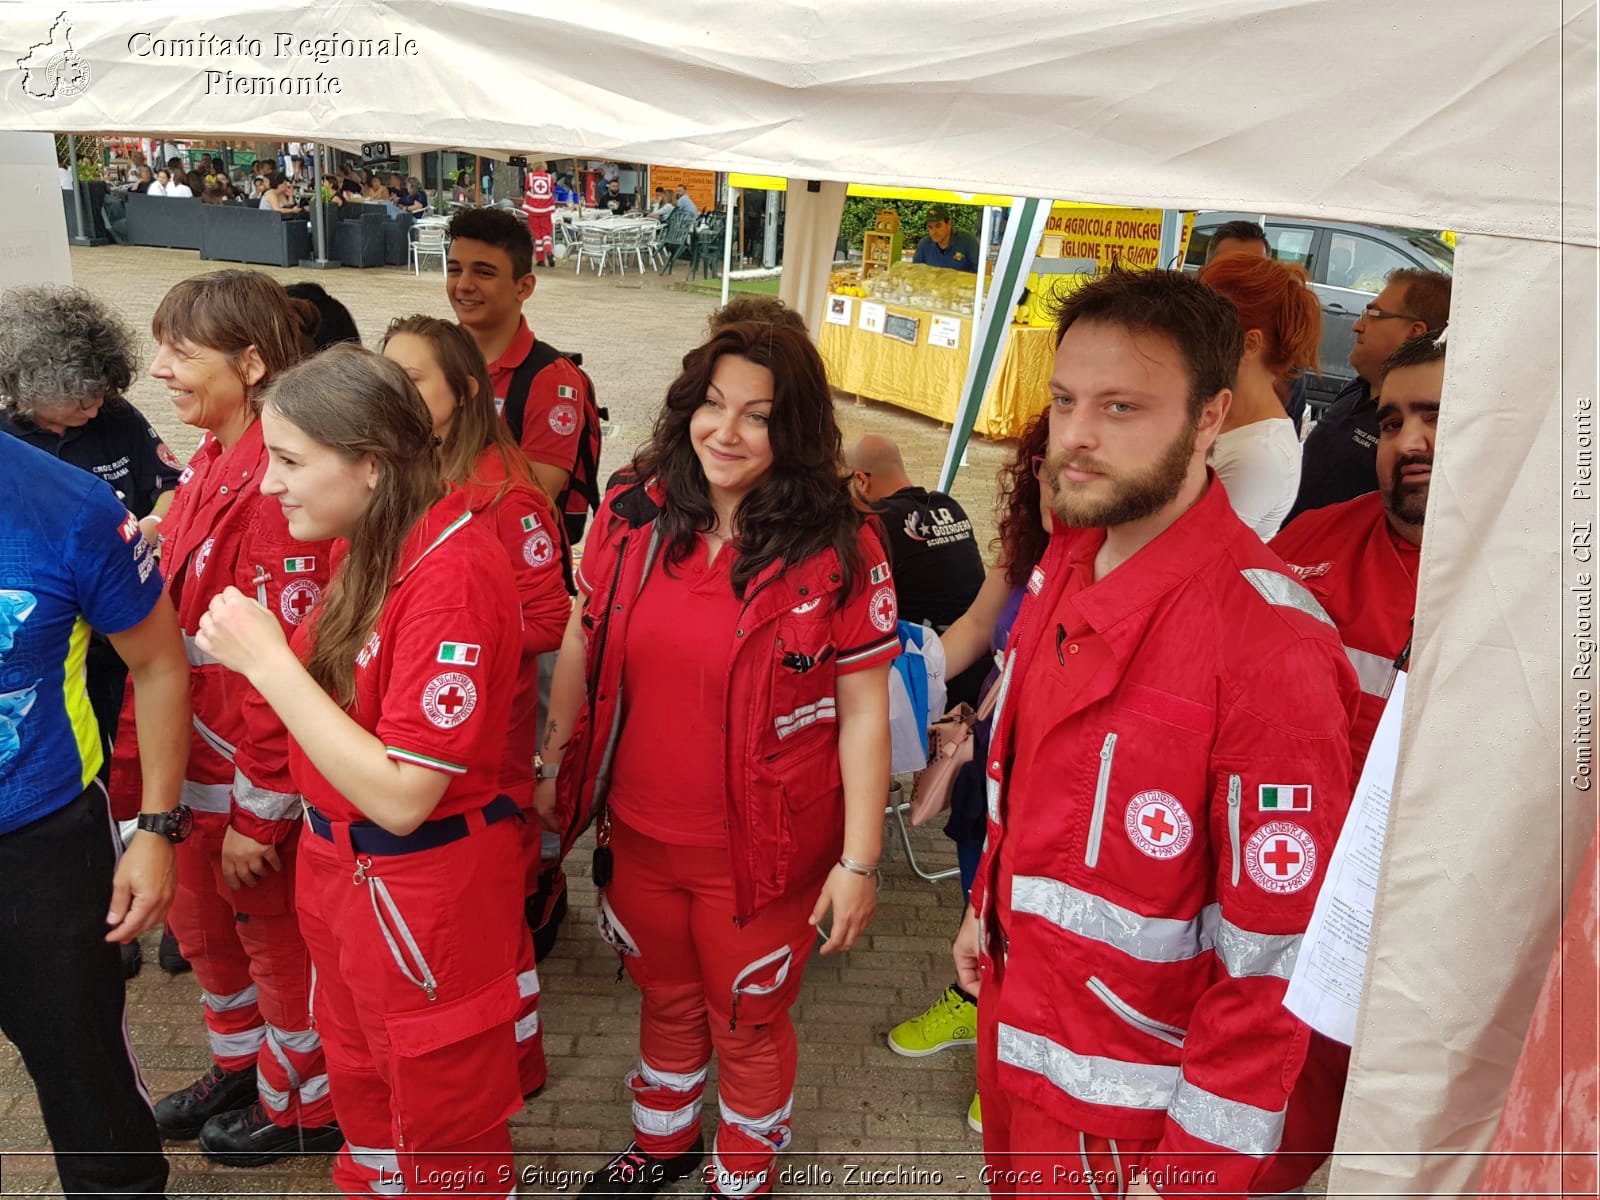 La Loggia 9 Giugno 2019 - Sagra dello Zucchino - Croce Rossa Italiana - Comitato Regionale del Piemonte